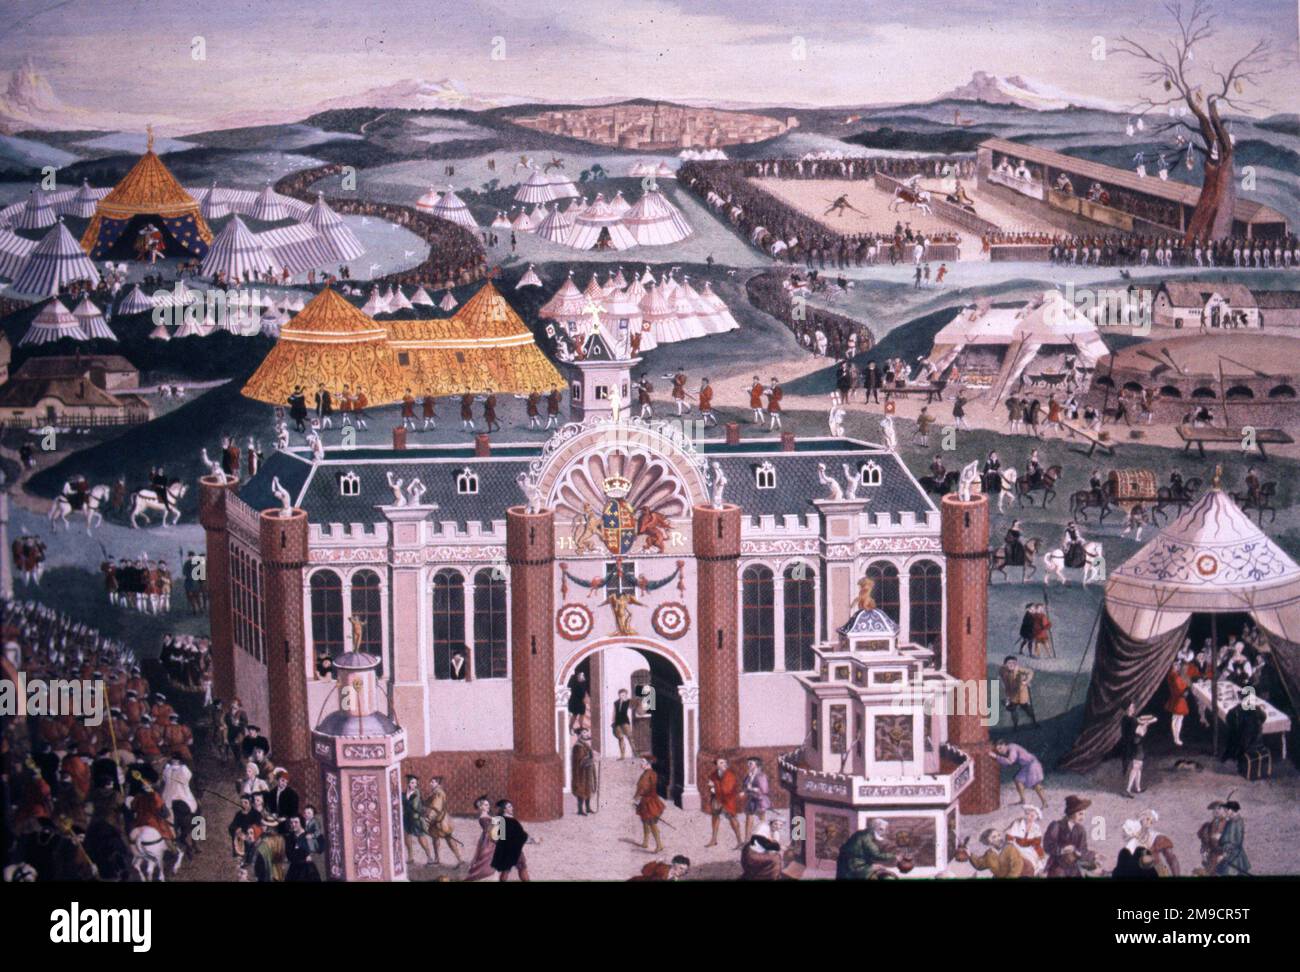 Campo de la tela de oro, Balinghem, Francia donde el rey Enrique VIII se reunió con el rey Francisco I de Francia Foto de stock